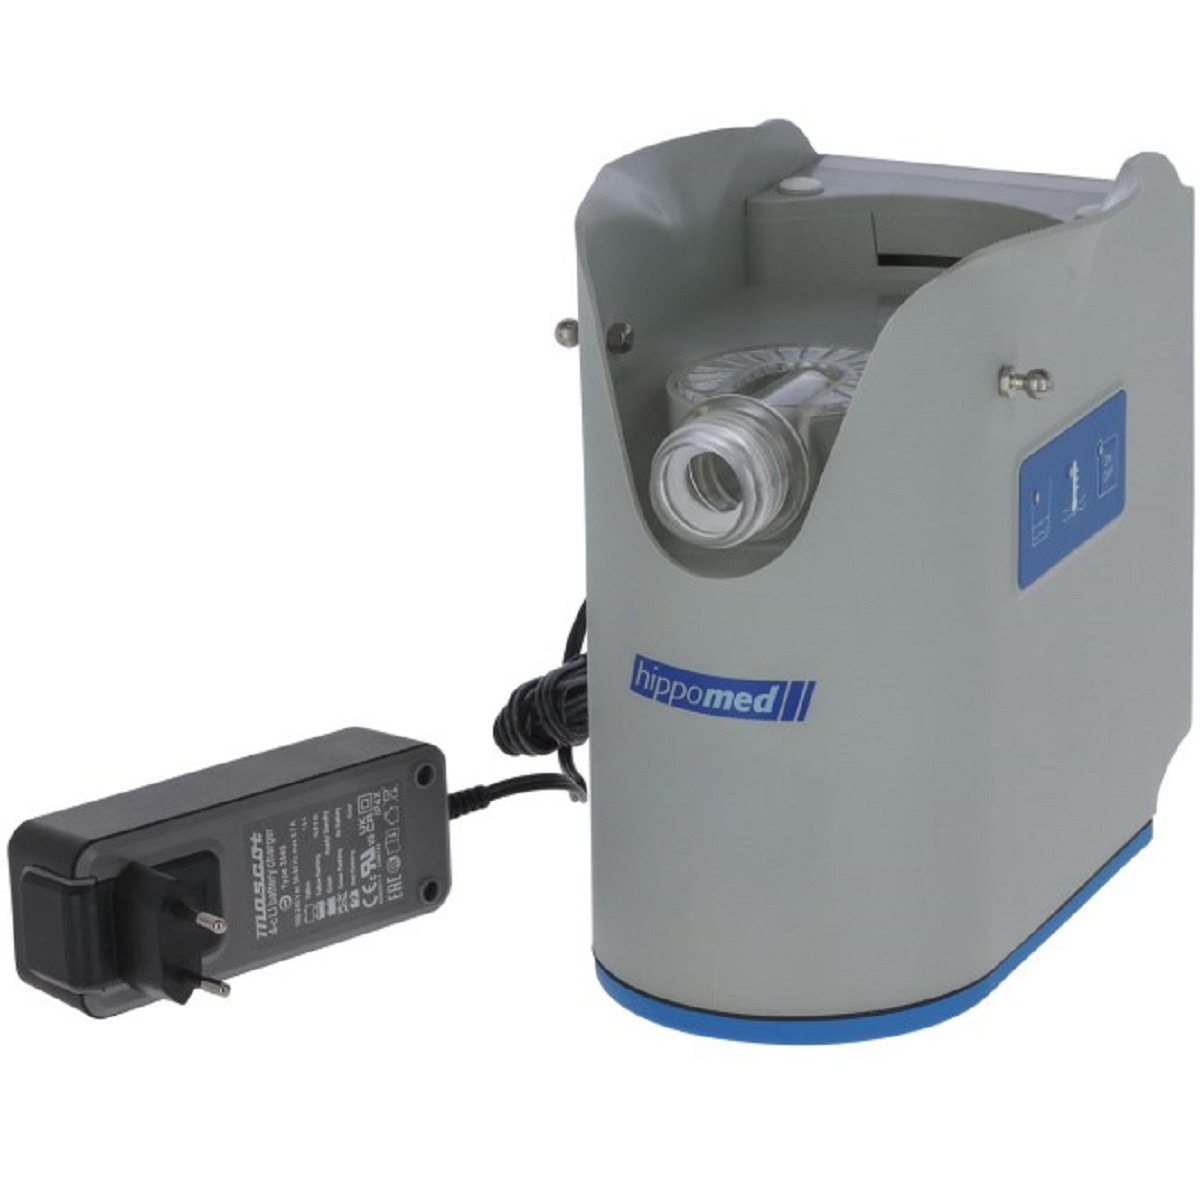 Ultrasound Inhaler Horse AirOne Flex incl. Mask, Battery